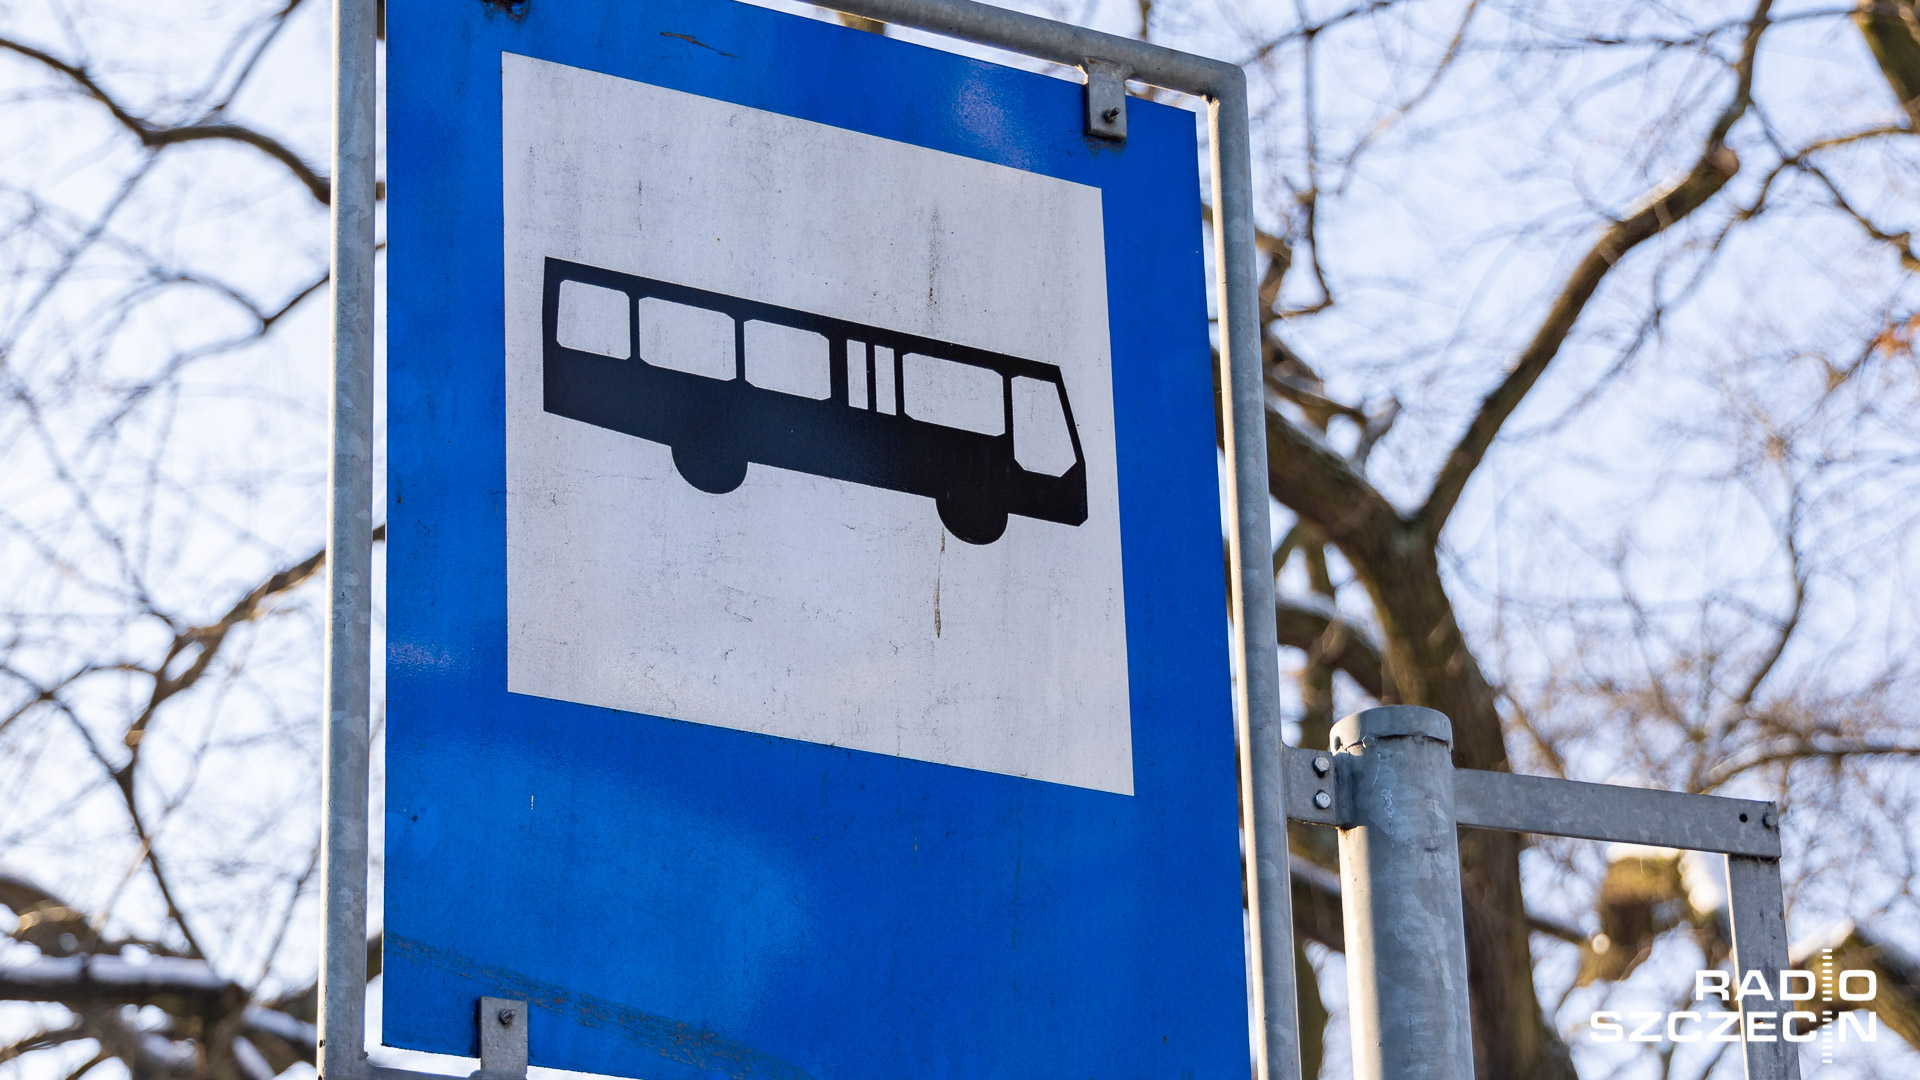 Kierowca autobusu miejskiego w Malborku w woj. pomorskim prowadził pojazd pod wpływem narkotyków.